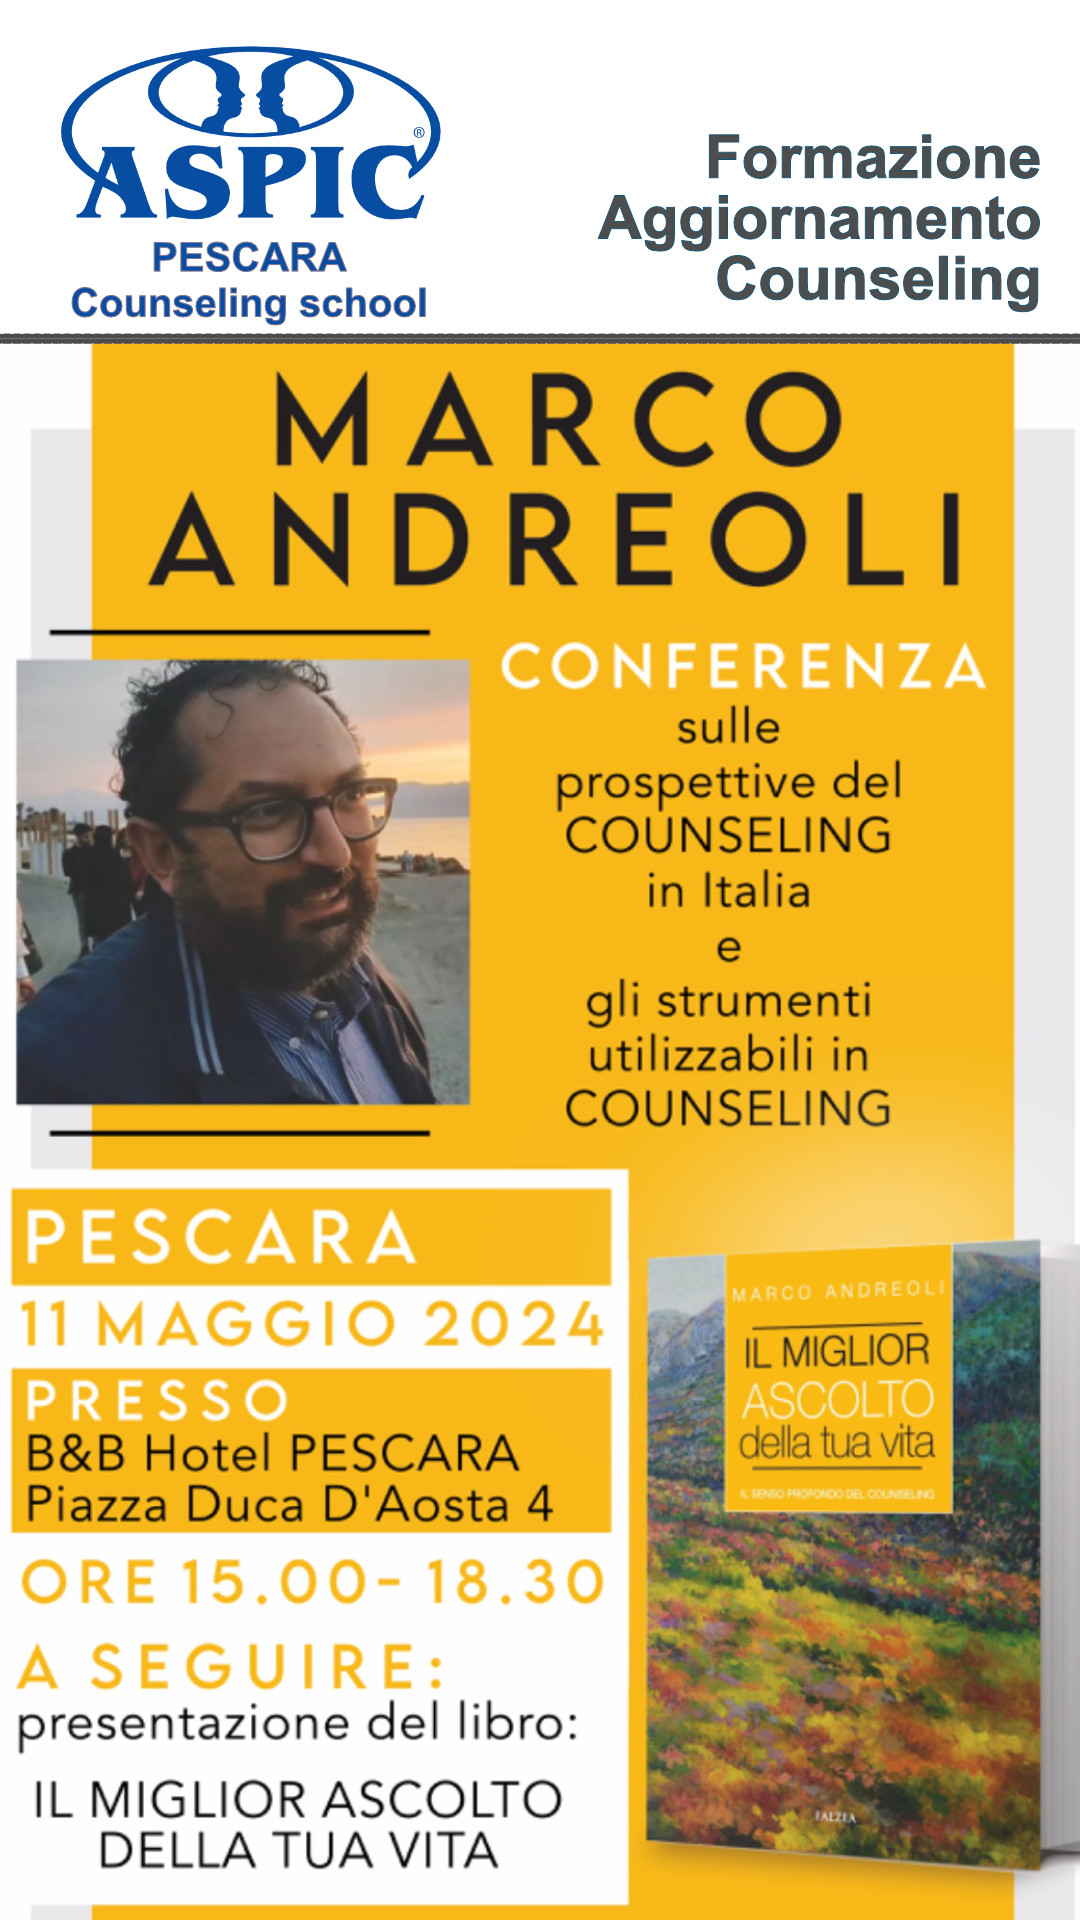 Master Gestalt Counseling "Prospettive e strumenti del Counseling in Italia" con Marco Andreoli